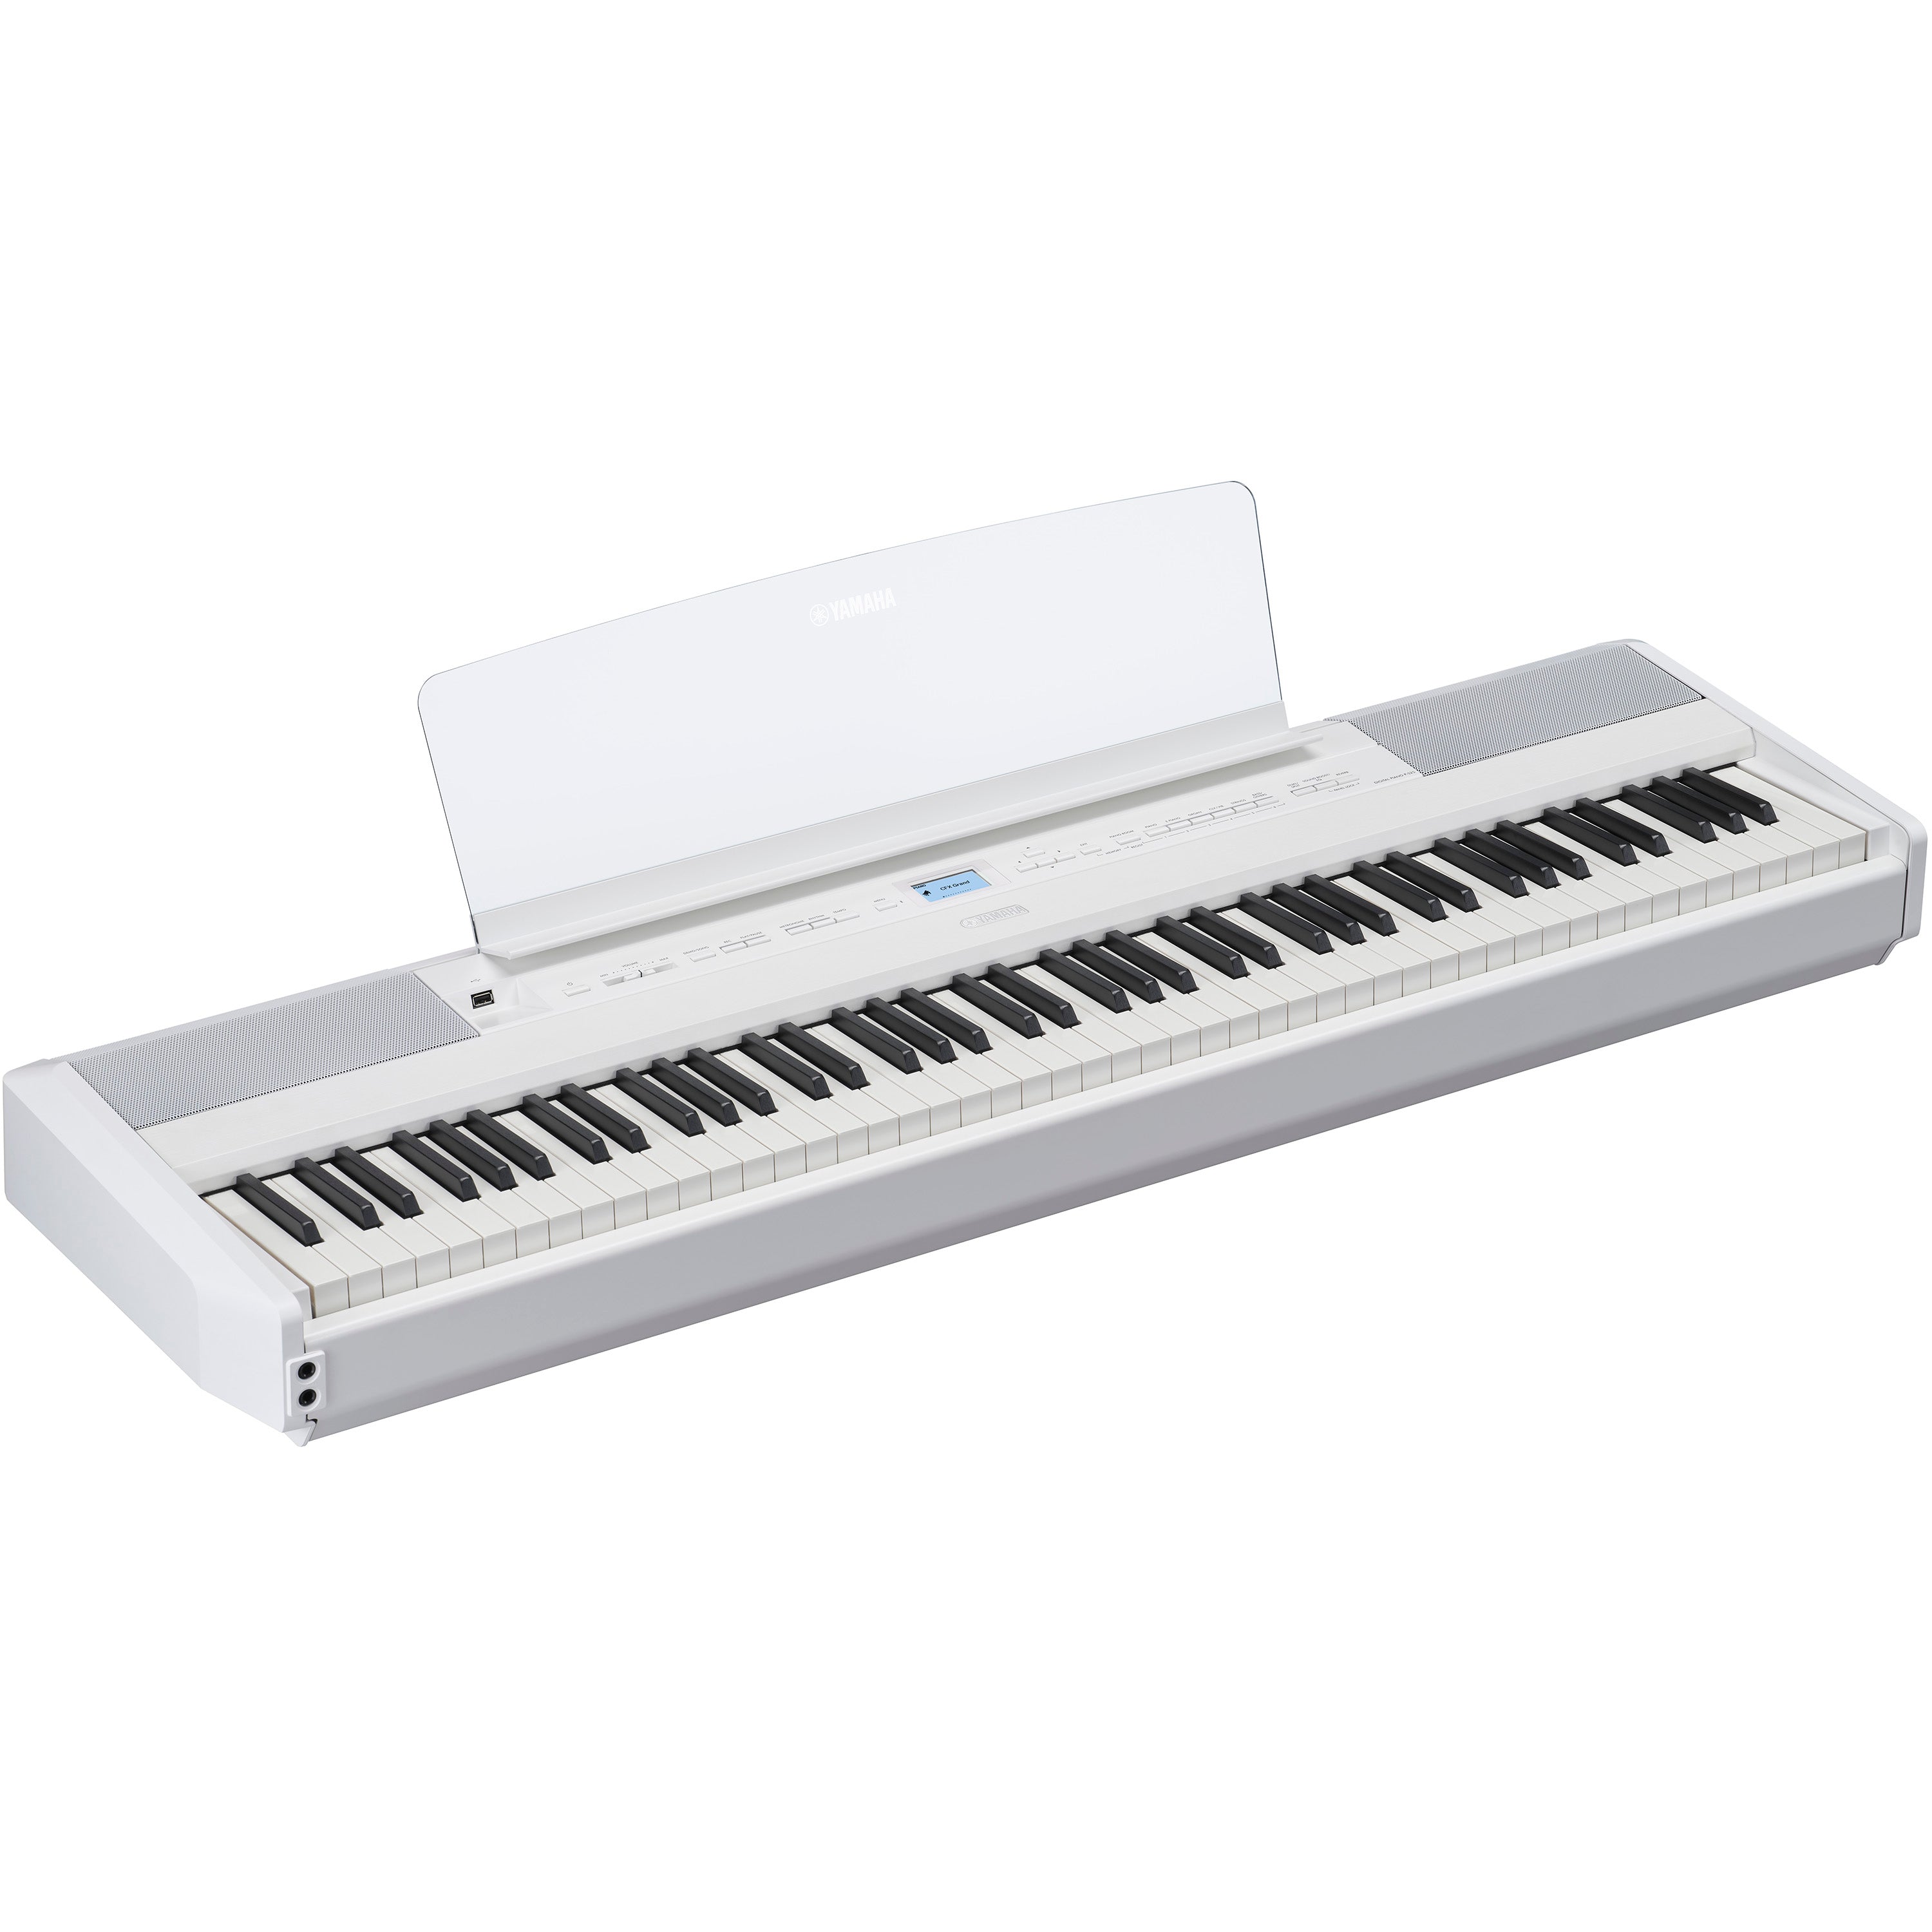 Yamaha P-525 Digital Piano - White, View 1